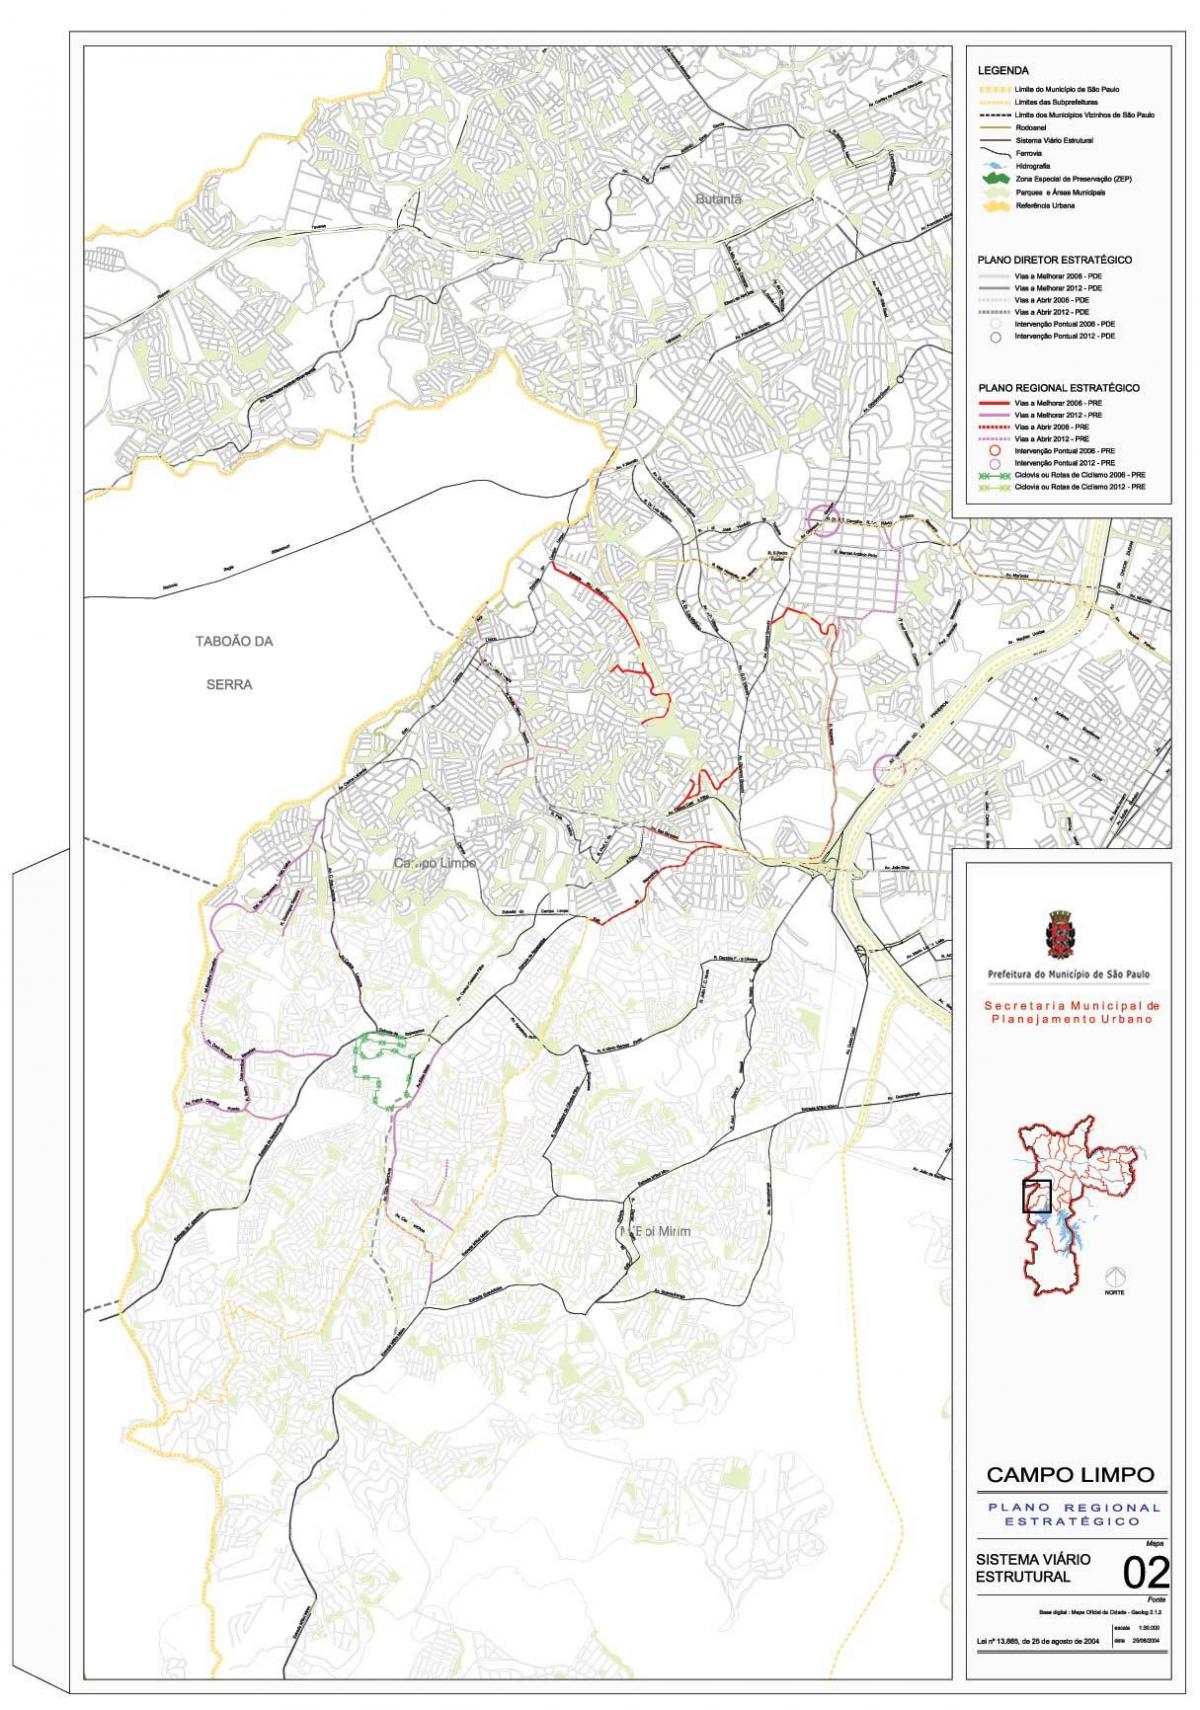 Peta dari Campo Limpo Sao Paulo - Jalan